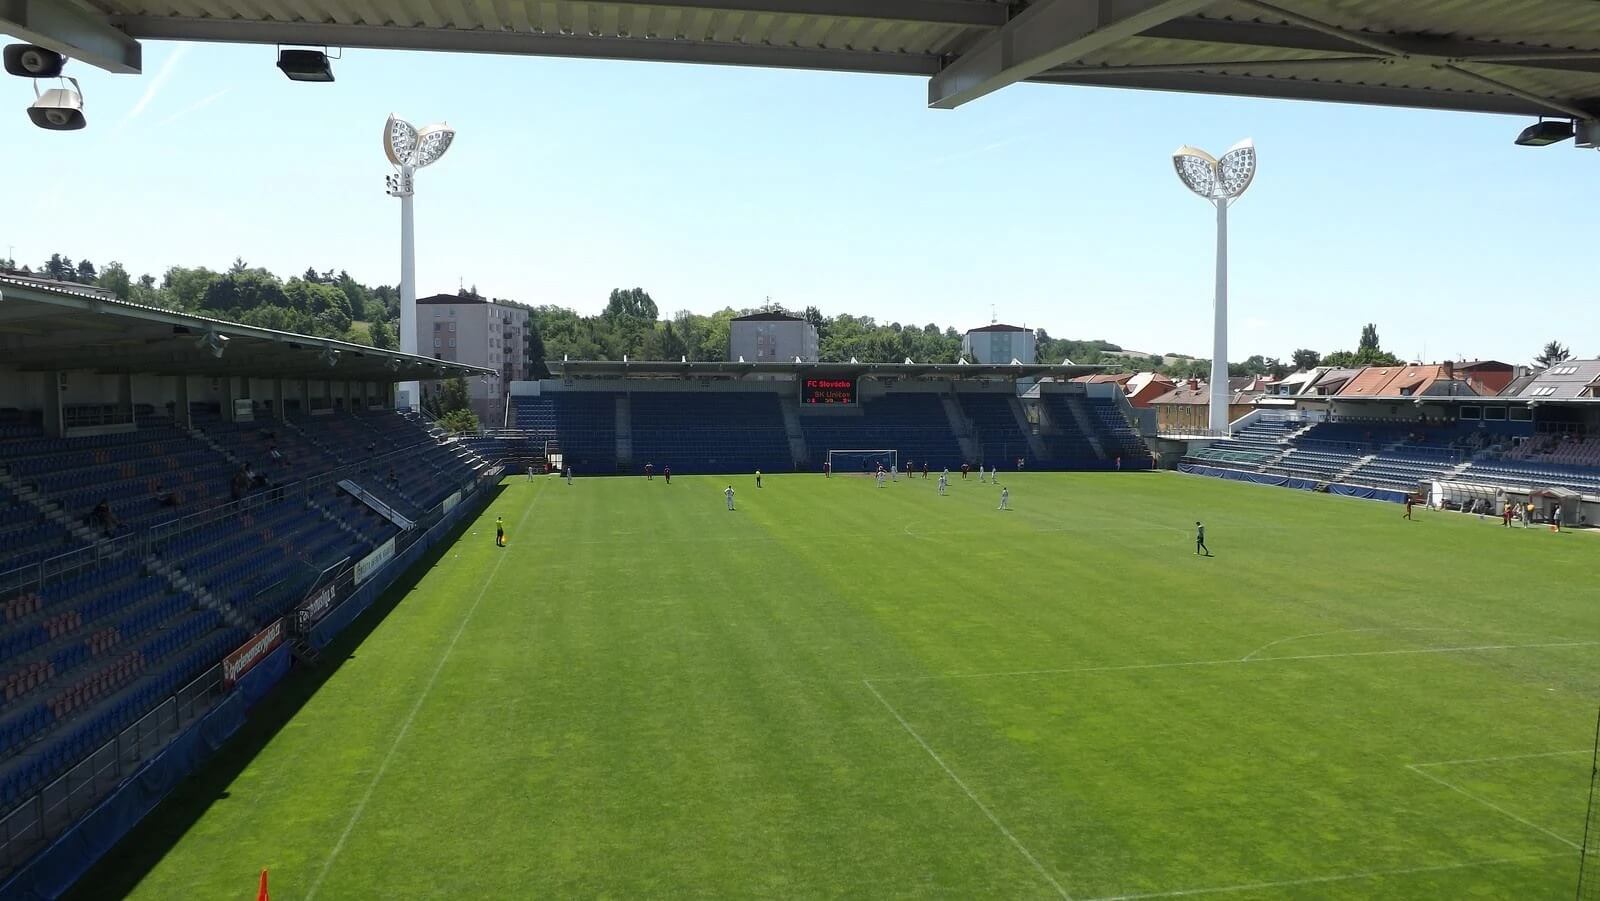 12-surprising-facts-about-mestsky-fotbalovy-stadion-miroslava-valenty